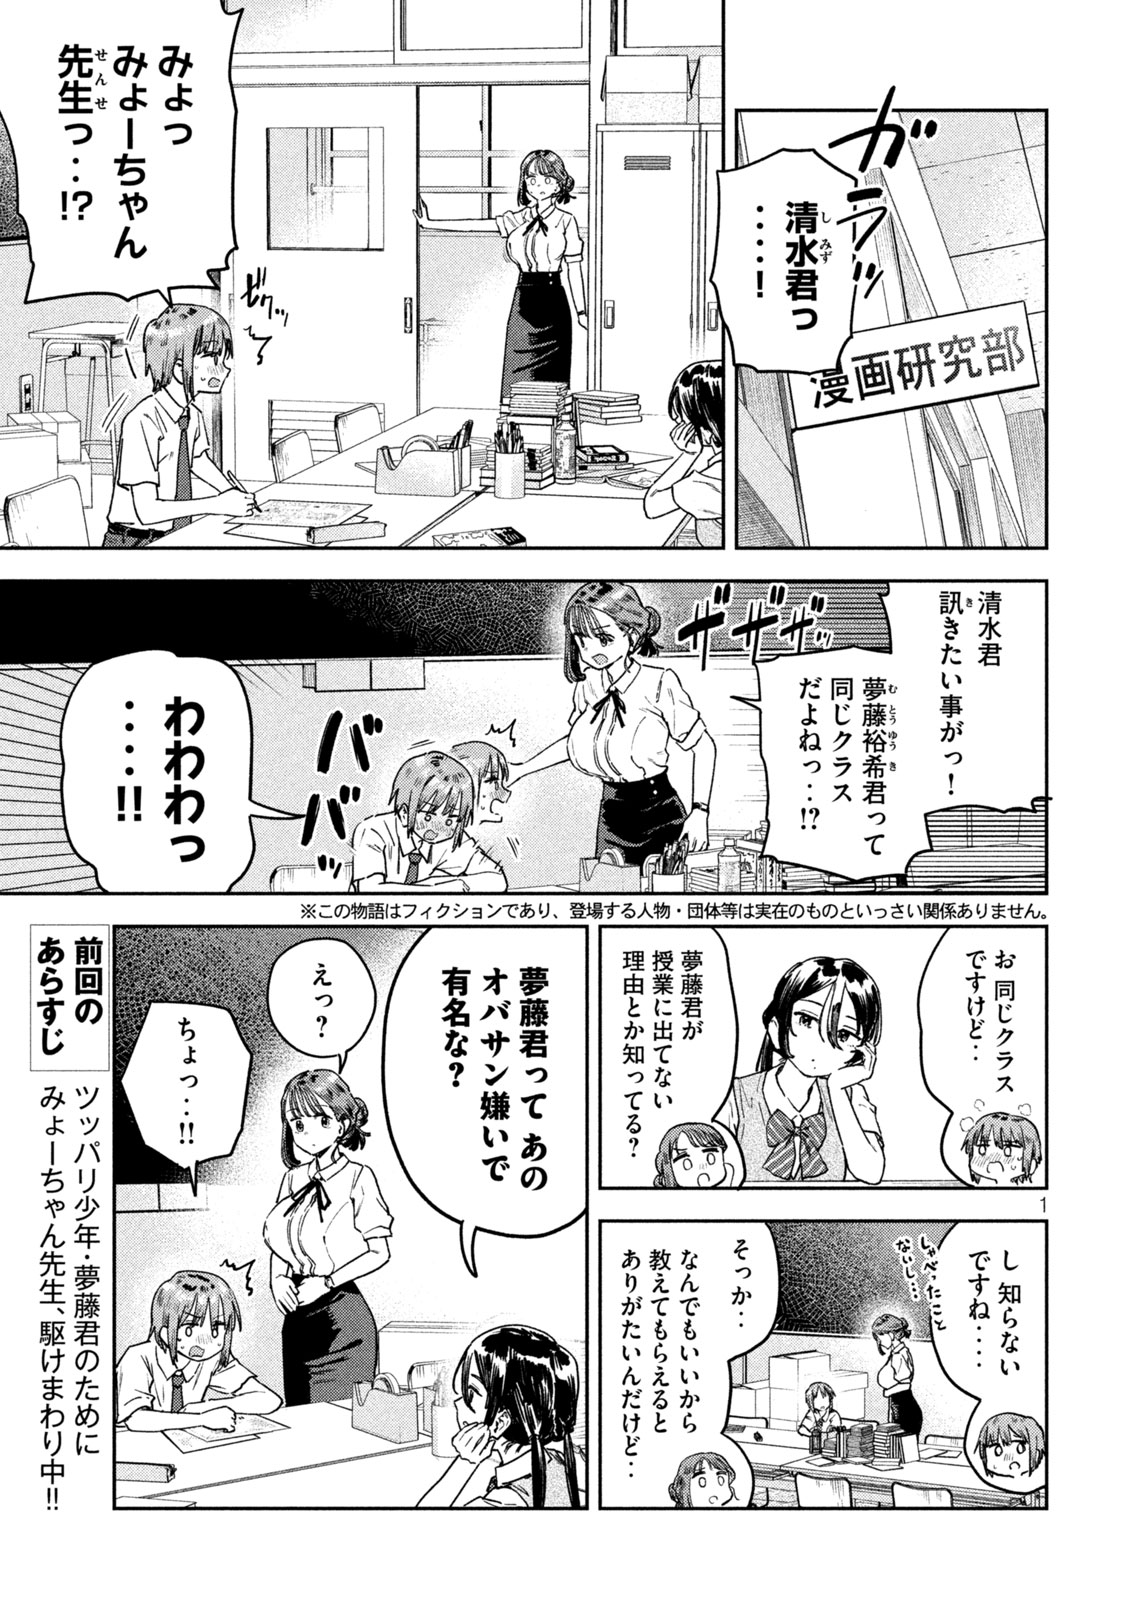 Myo-chan Sensei wa Kaku Katariki - Chapter 56 - Page 1